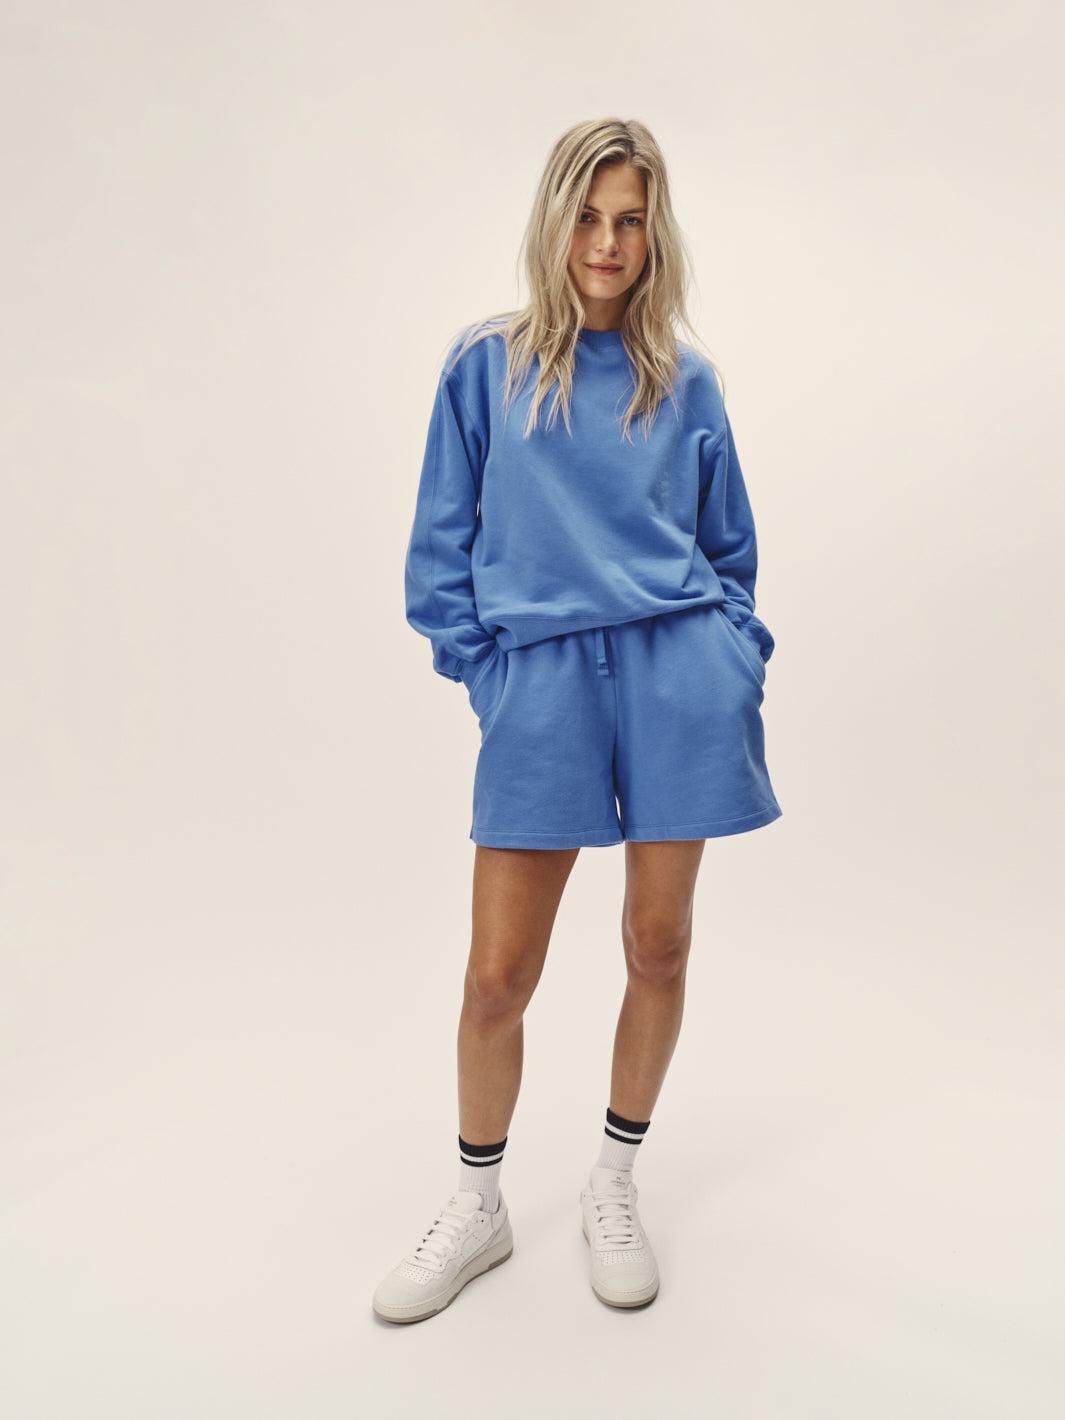 Frauen Sweatshort in blau aus super softer Bio Baumwolle in Portugal produziert